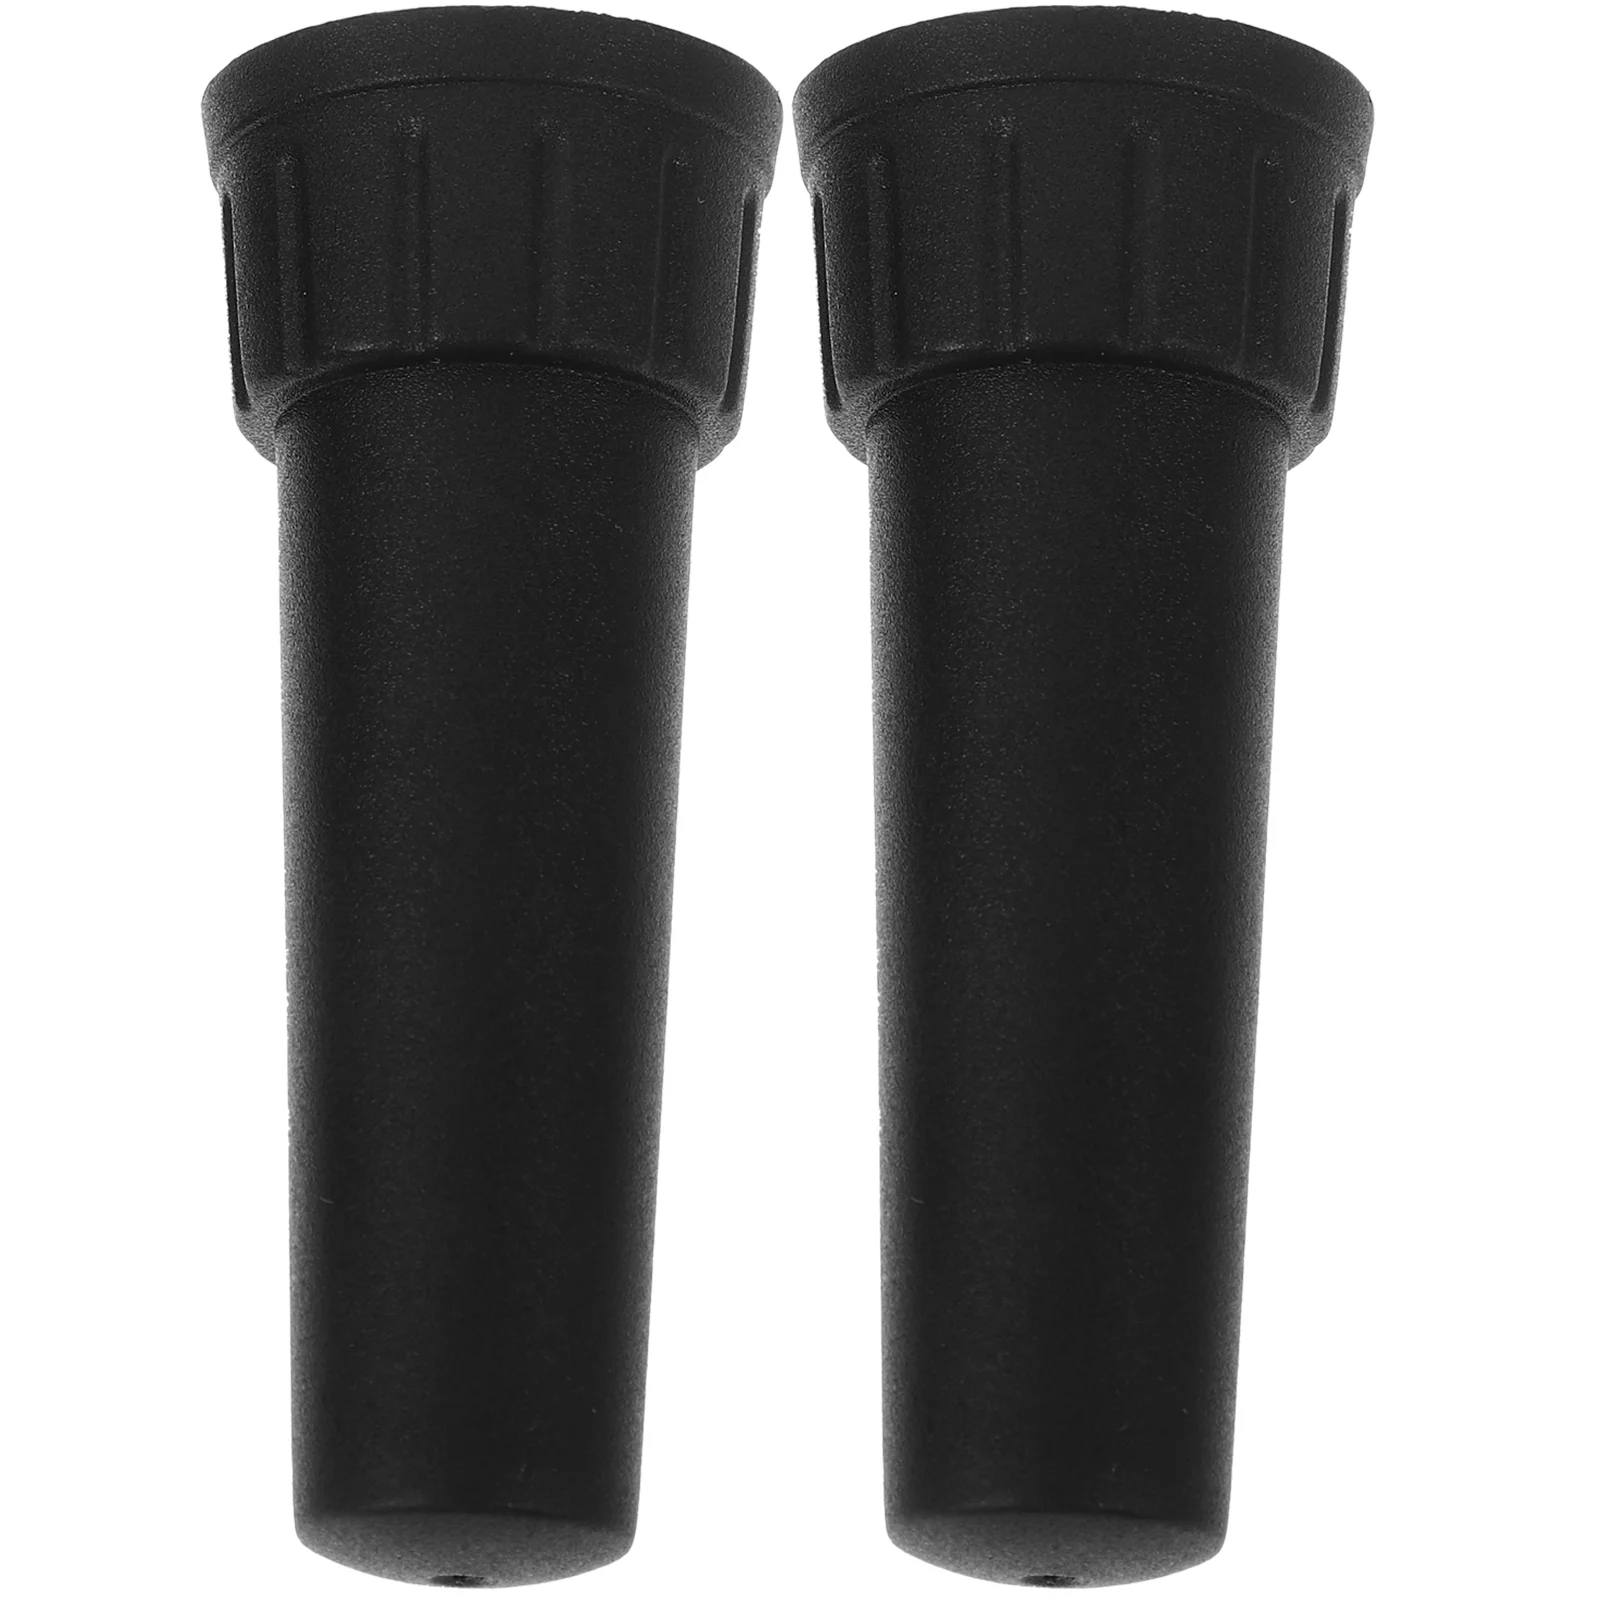 

2pcs Pole Umbrella Tips Convenient Umbrella Rubber Tip Replacement Covers